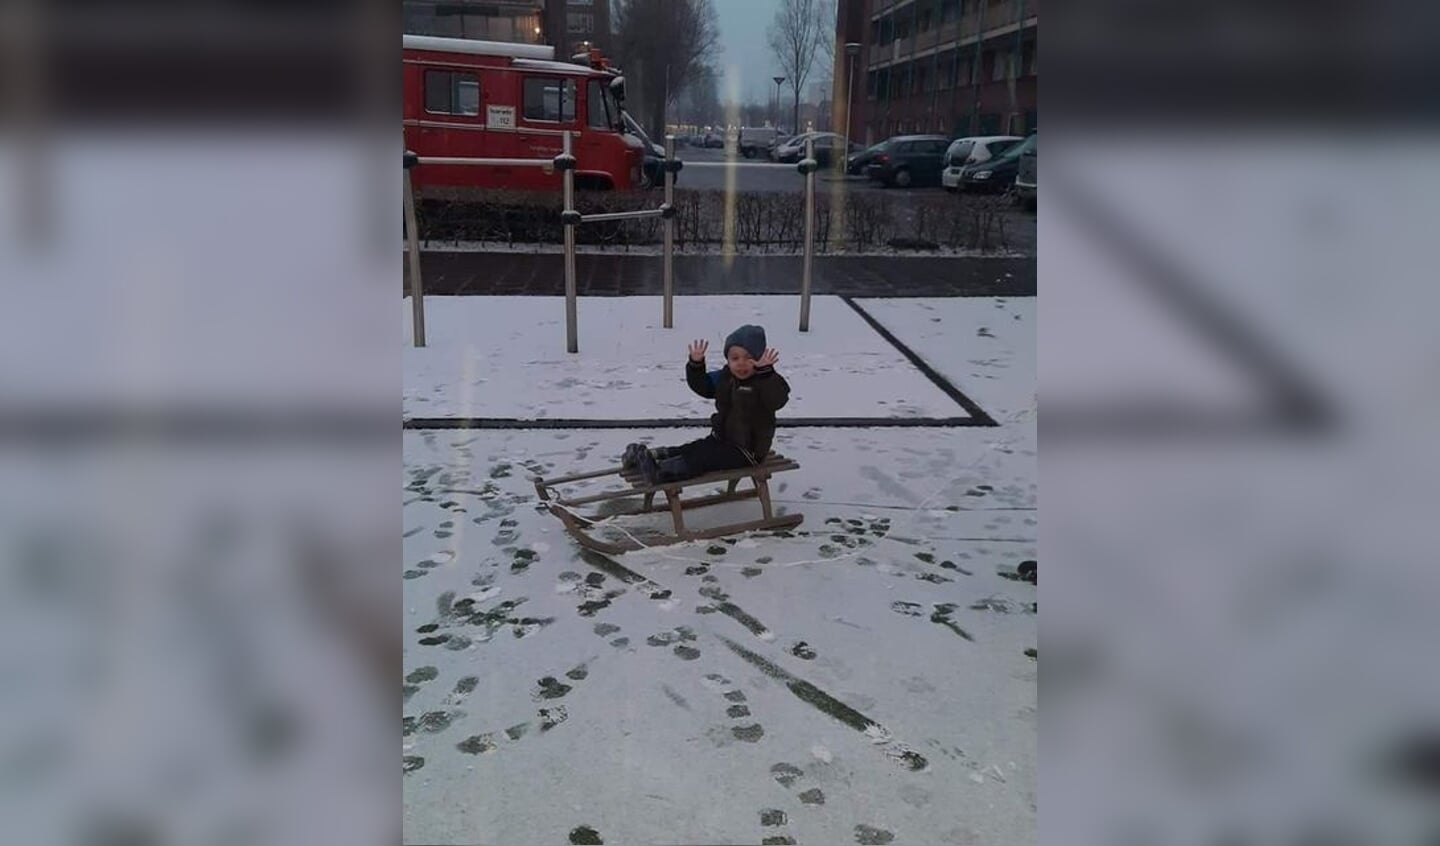 Julian van Kessel is lekker aan spelen in de sneeuw.